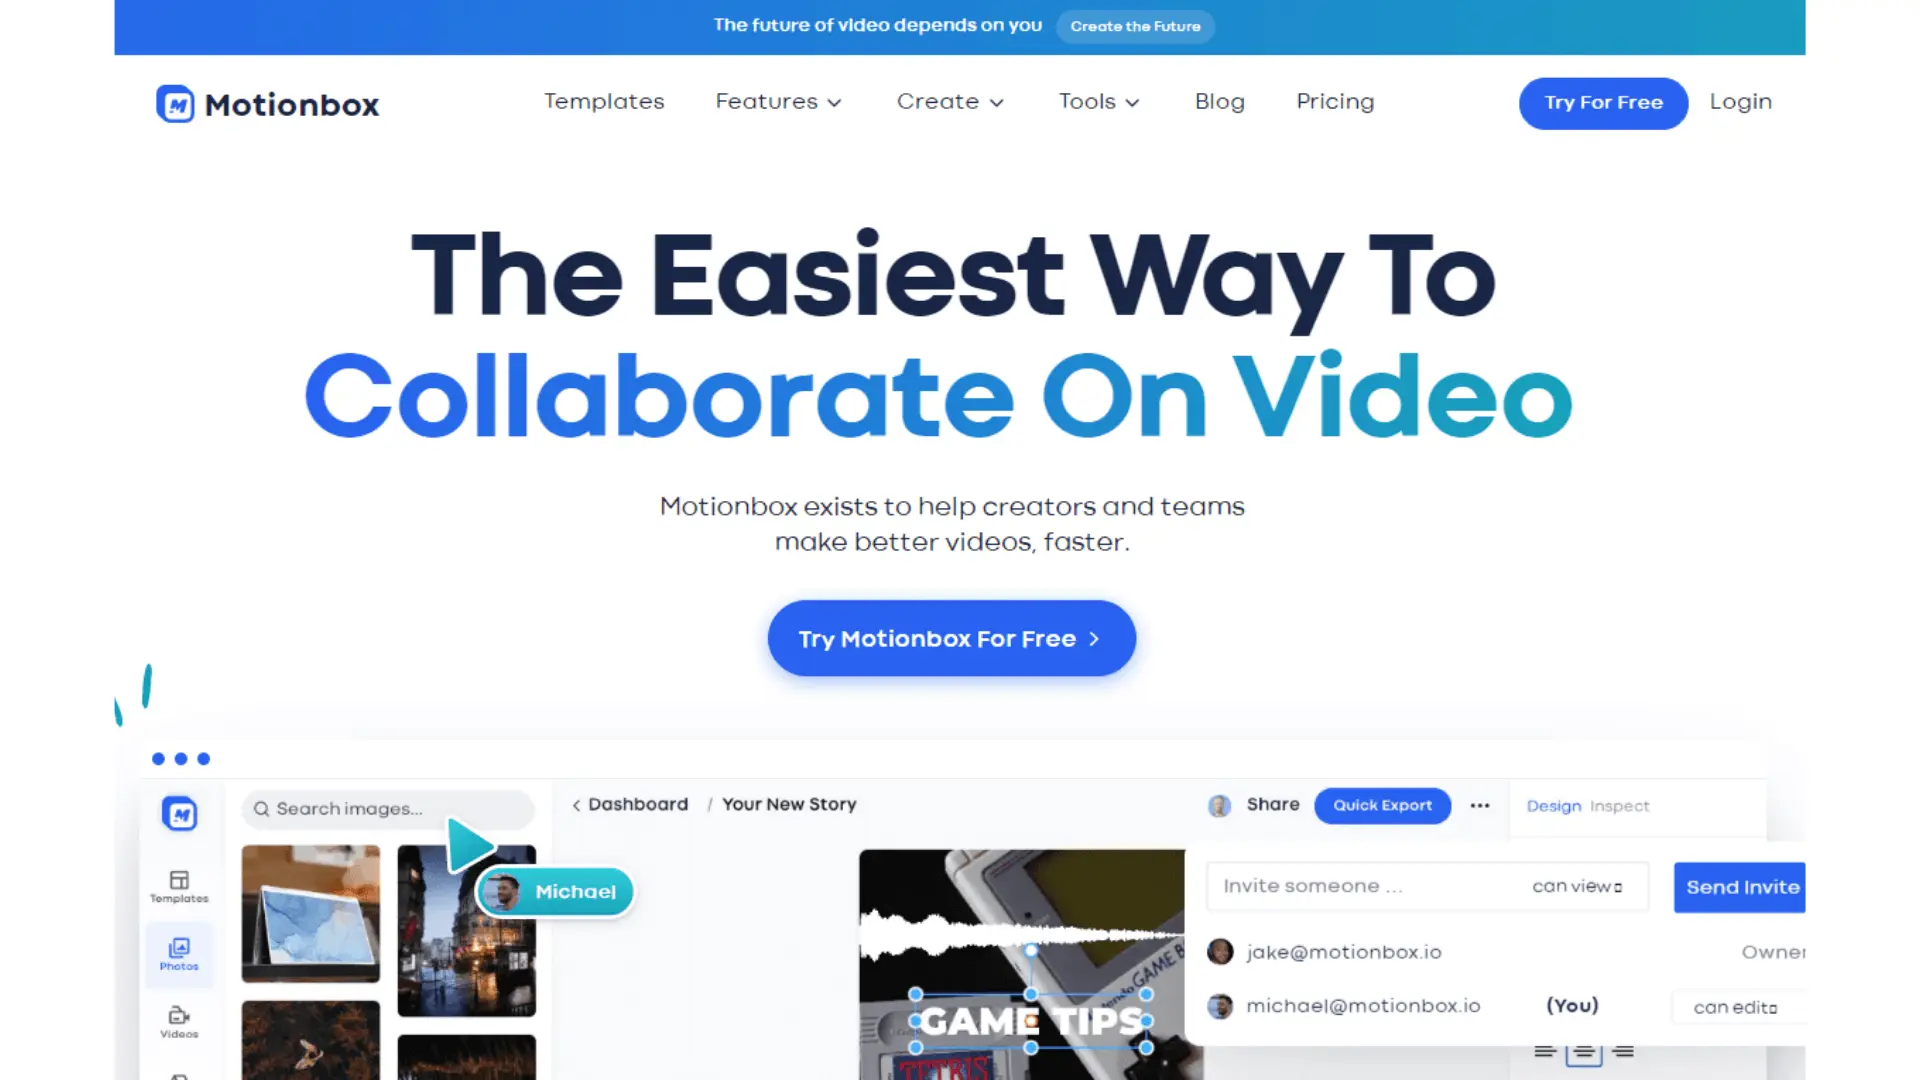 Motionbox is a video design platform